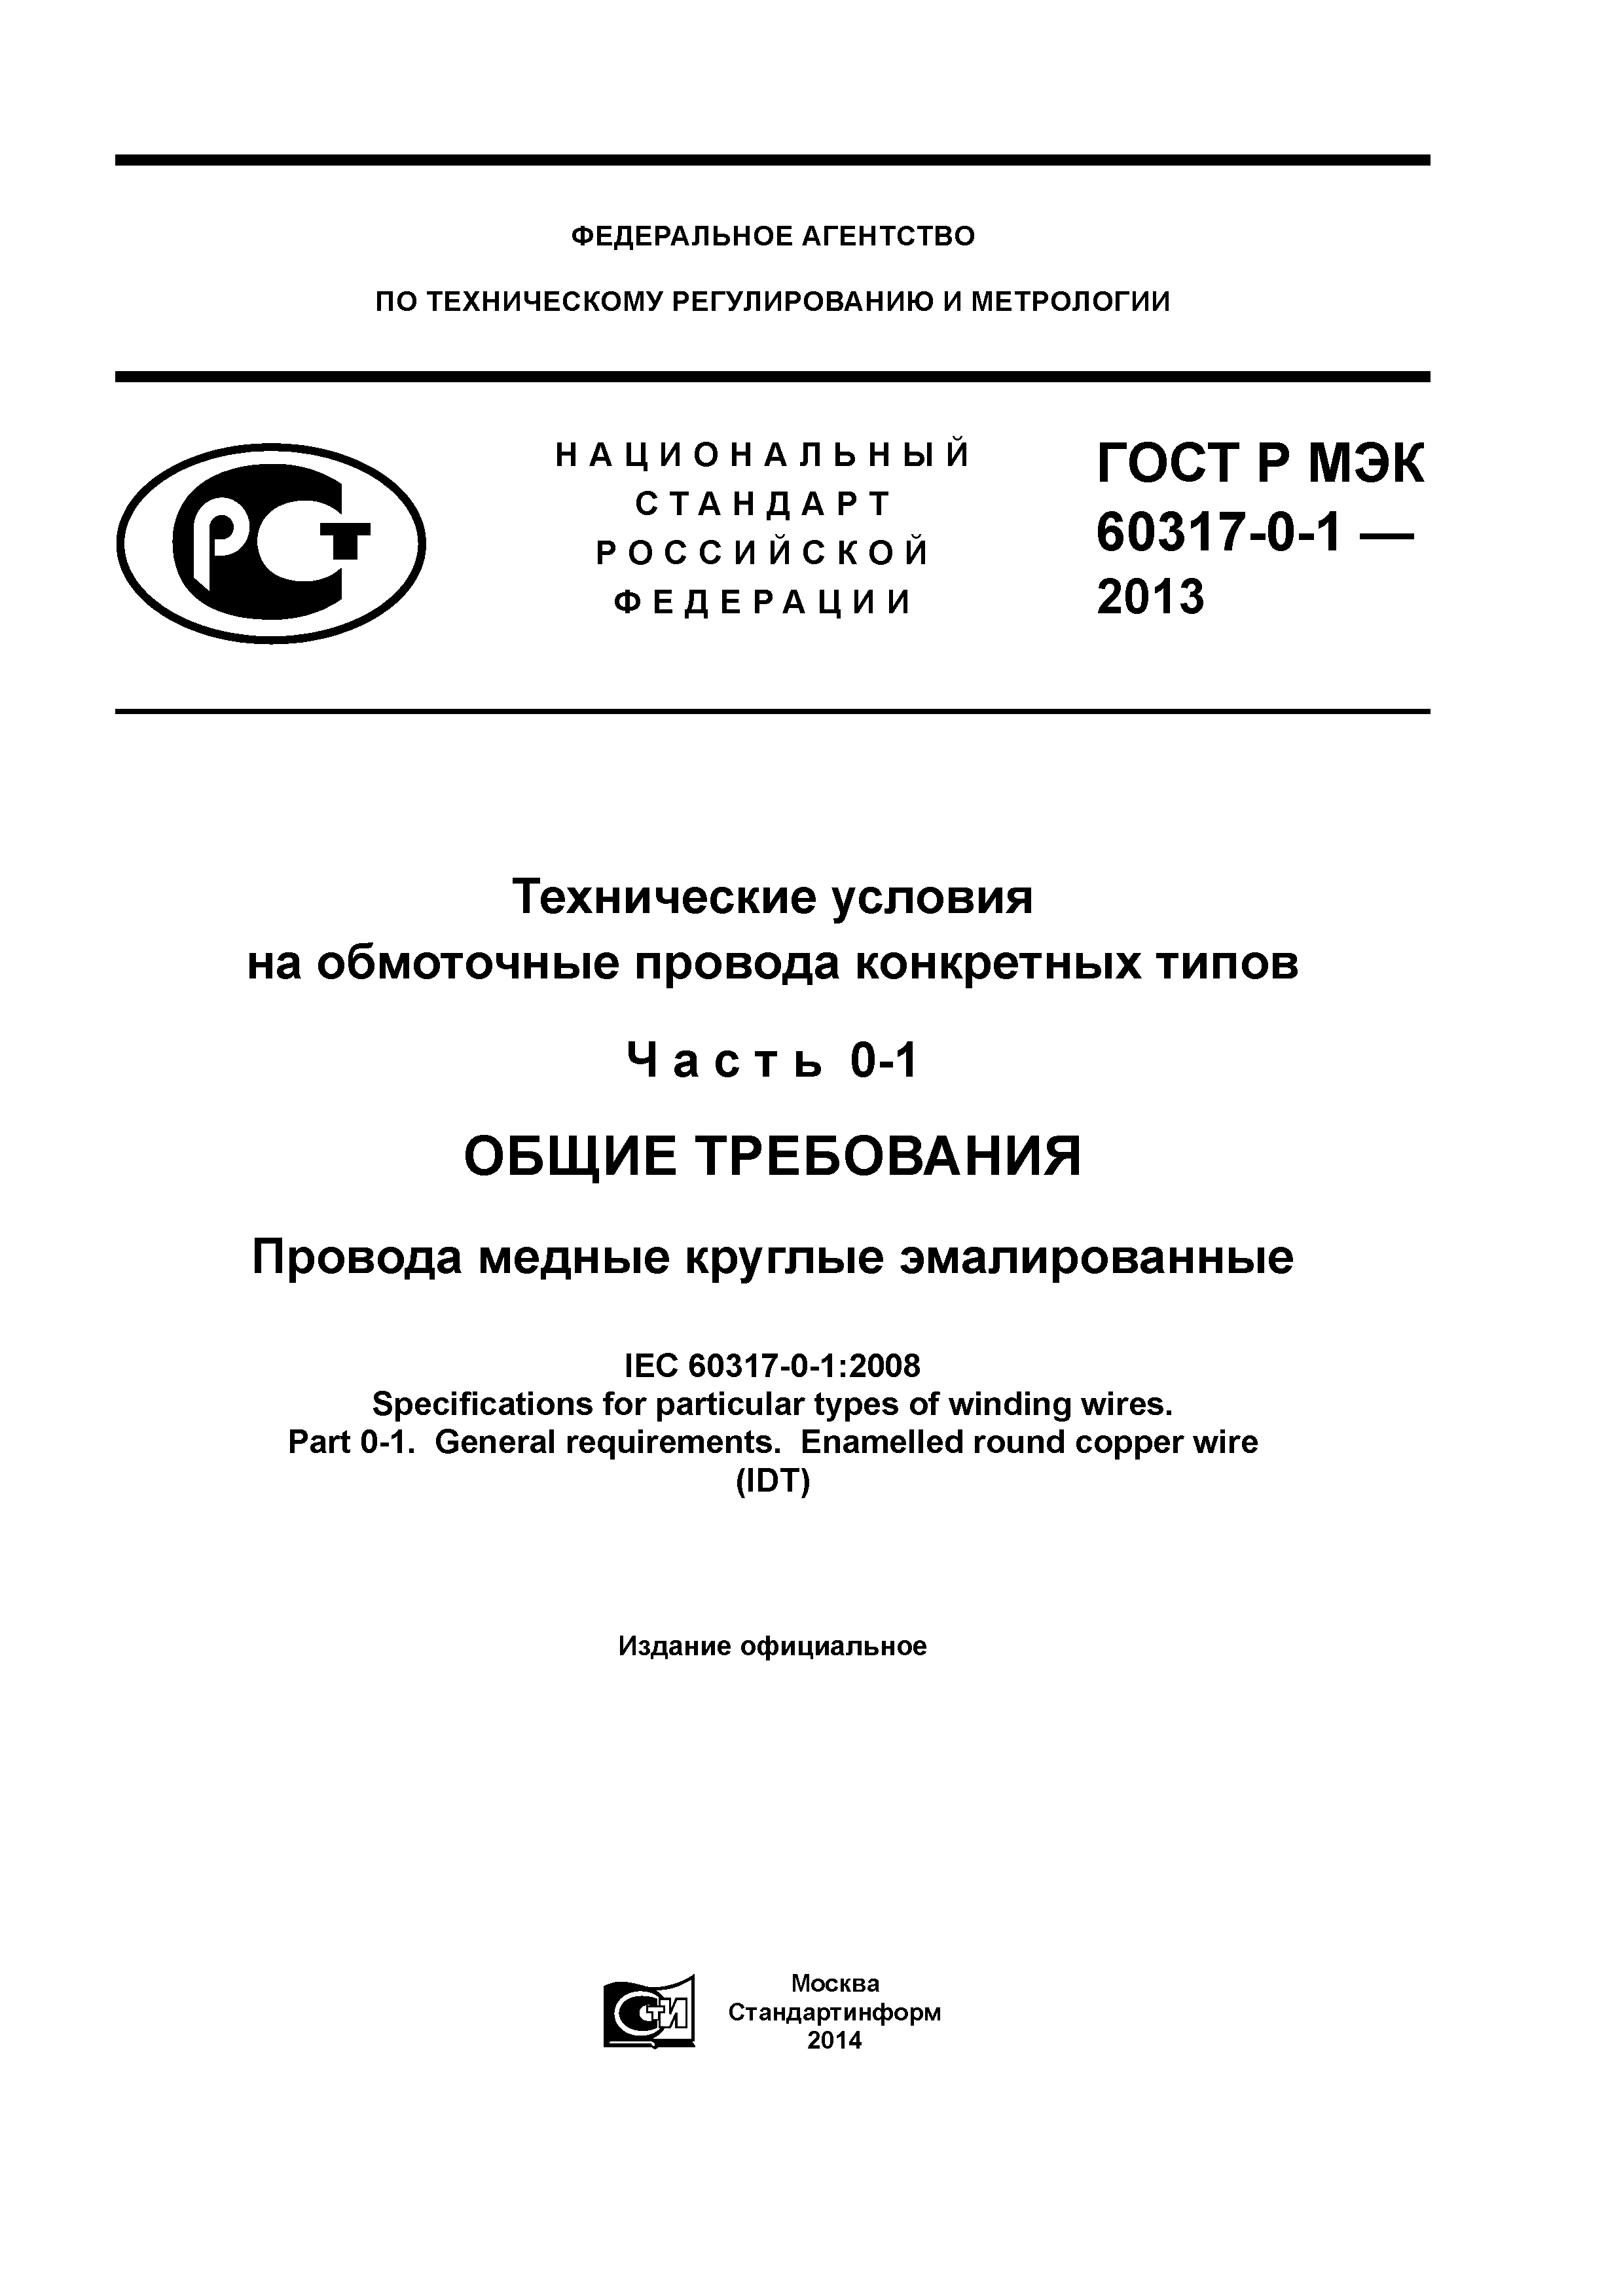 ГОСТ Р МЭК 60317-0-1-2013